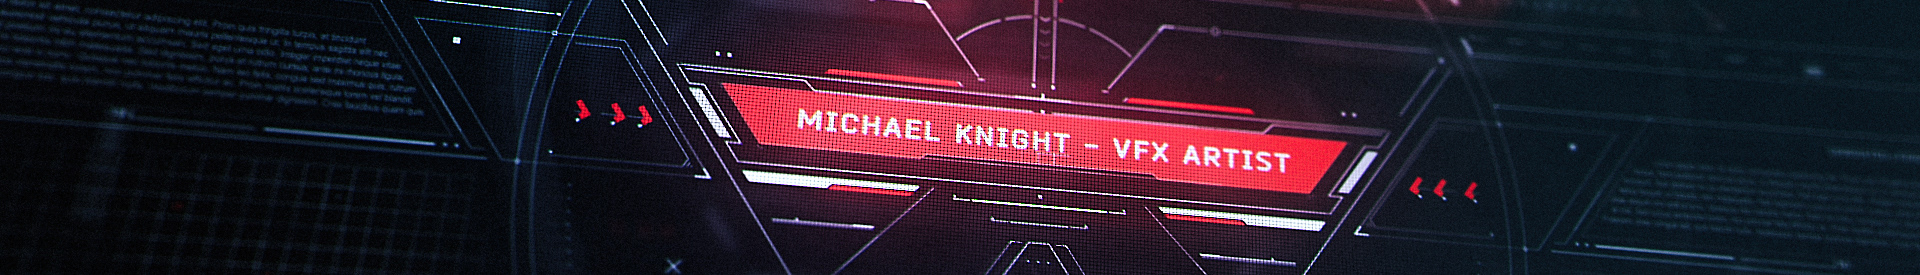 Baner profilu użytkownika Michael Knight